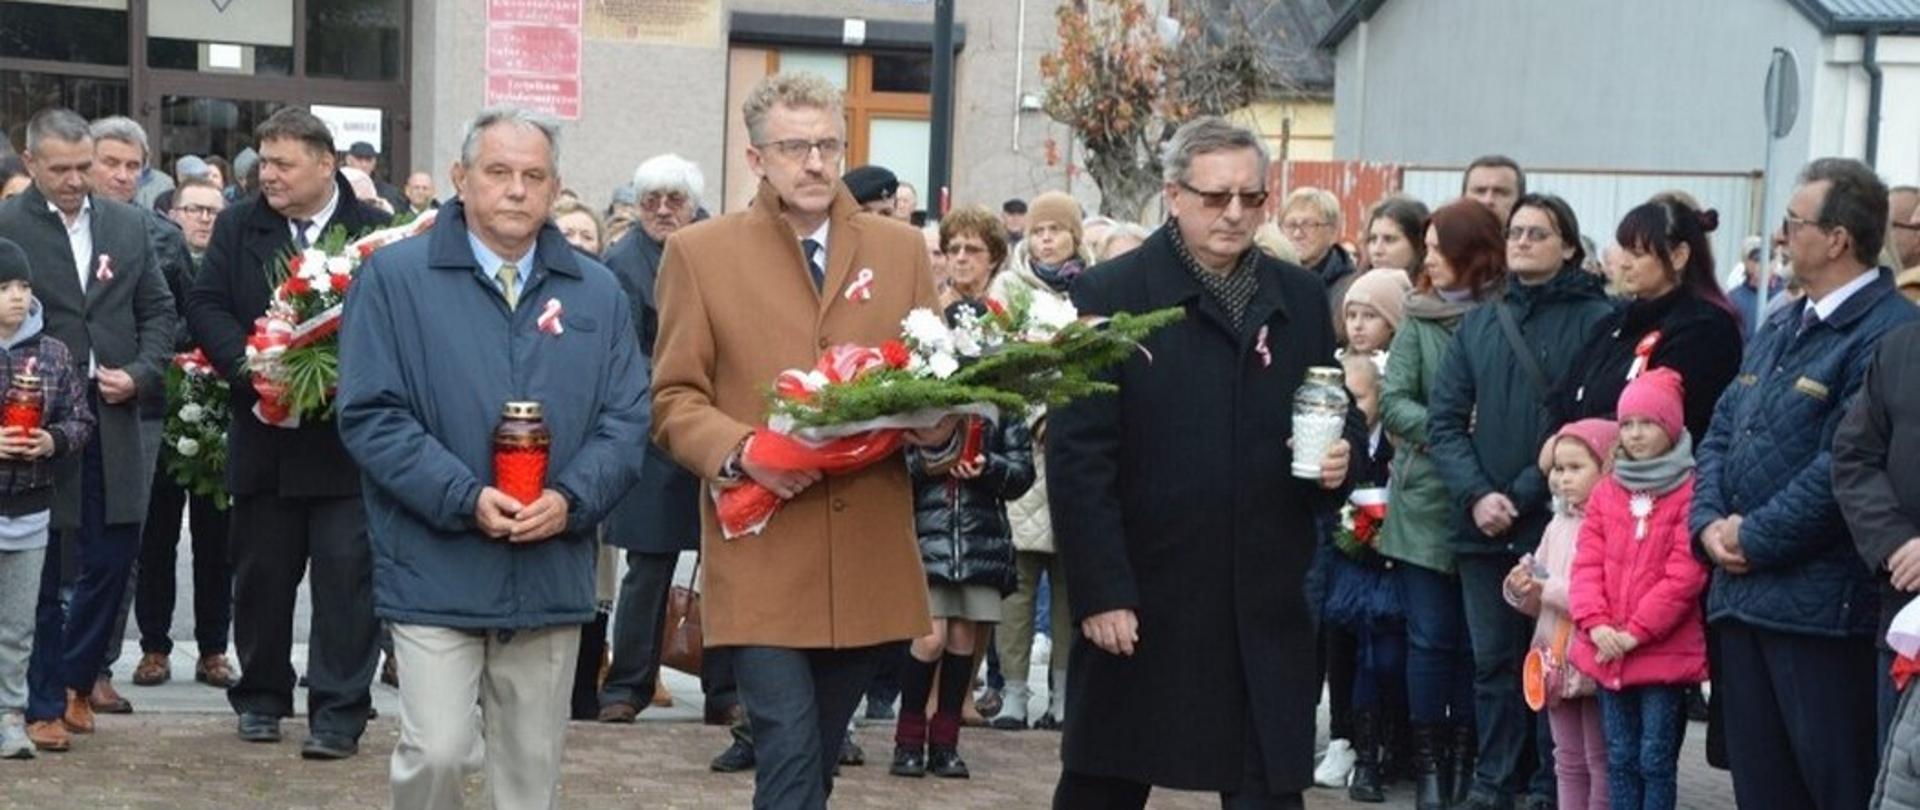 Obchody 104. rocznicy odzyskania niepodległości przez Polskę